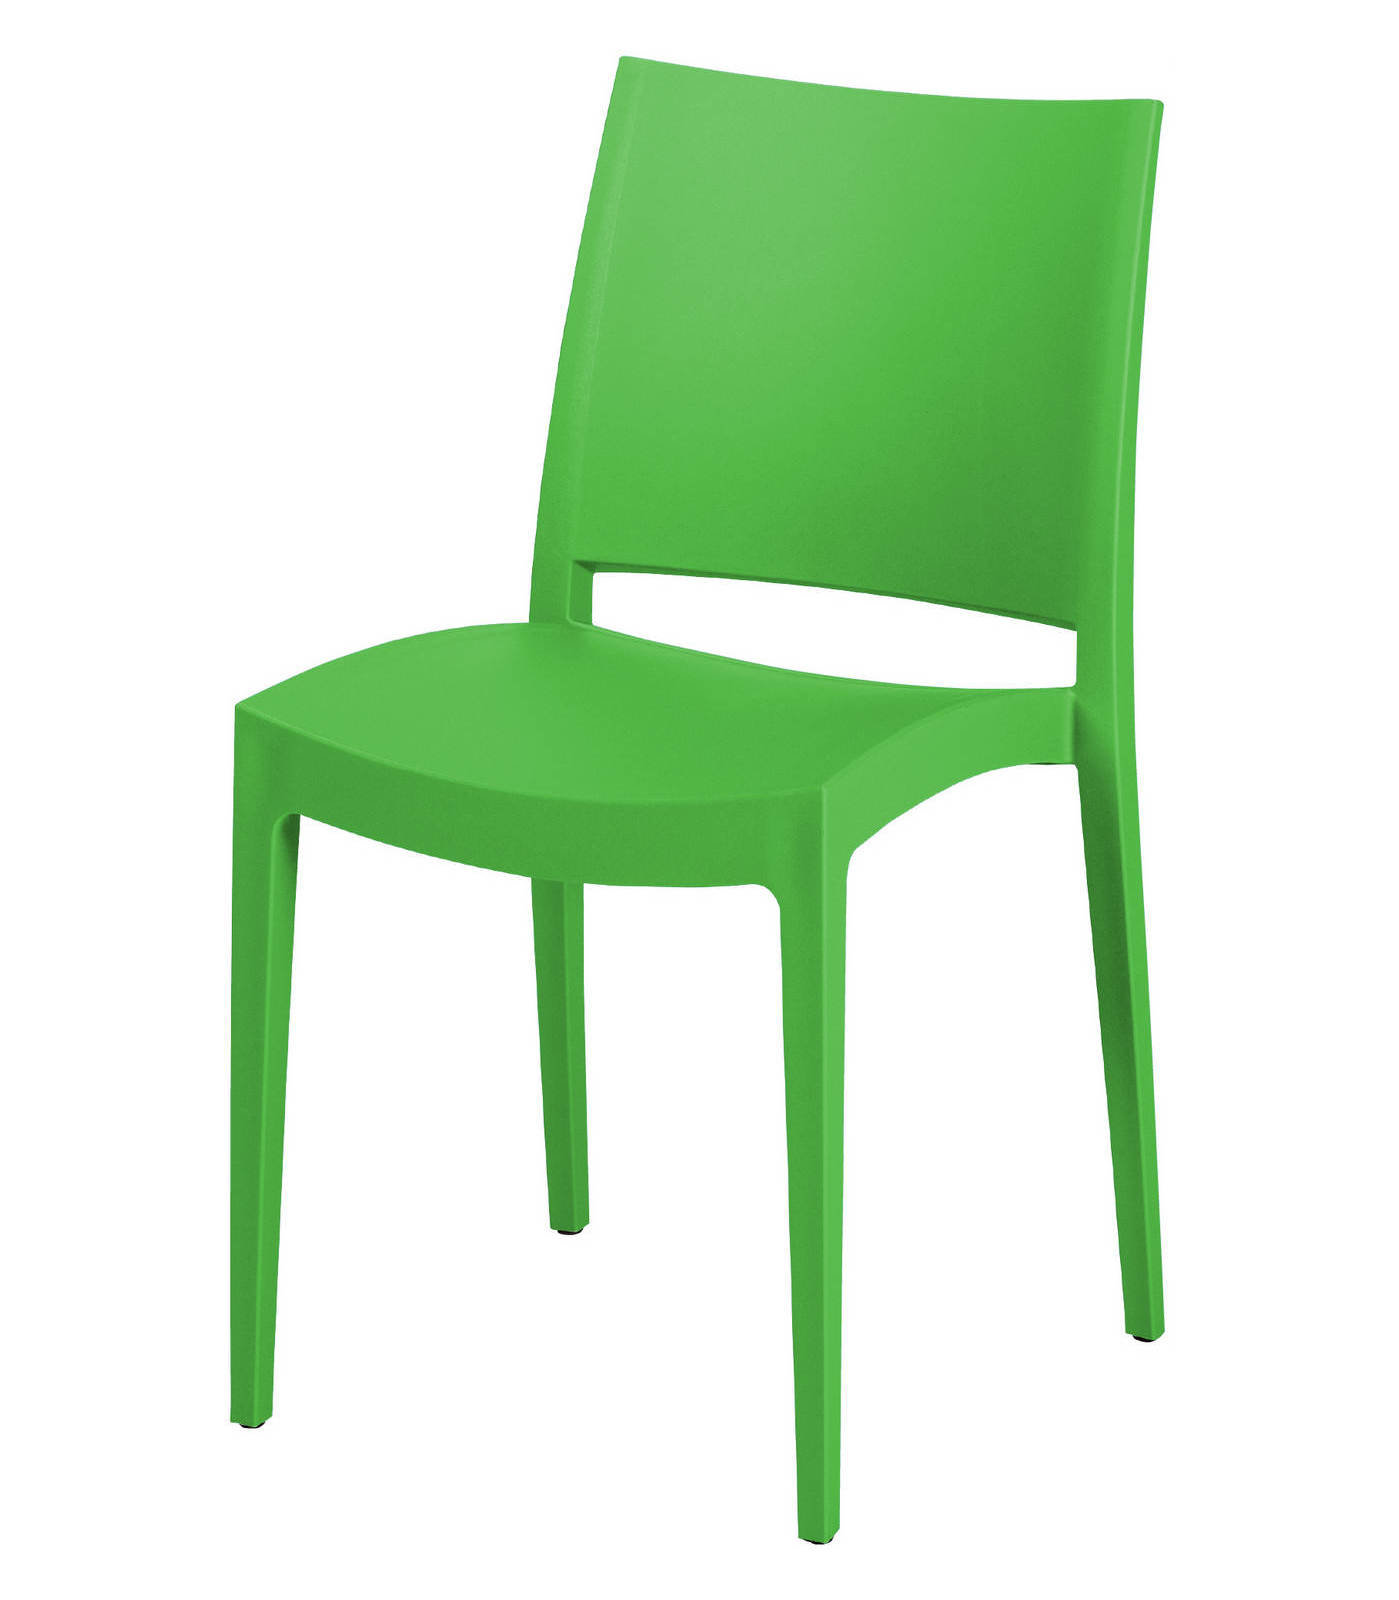 Картинка стул. Стул. Стул кресло зеленый. Стул на зеленом фоне. Стул клипарт.